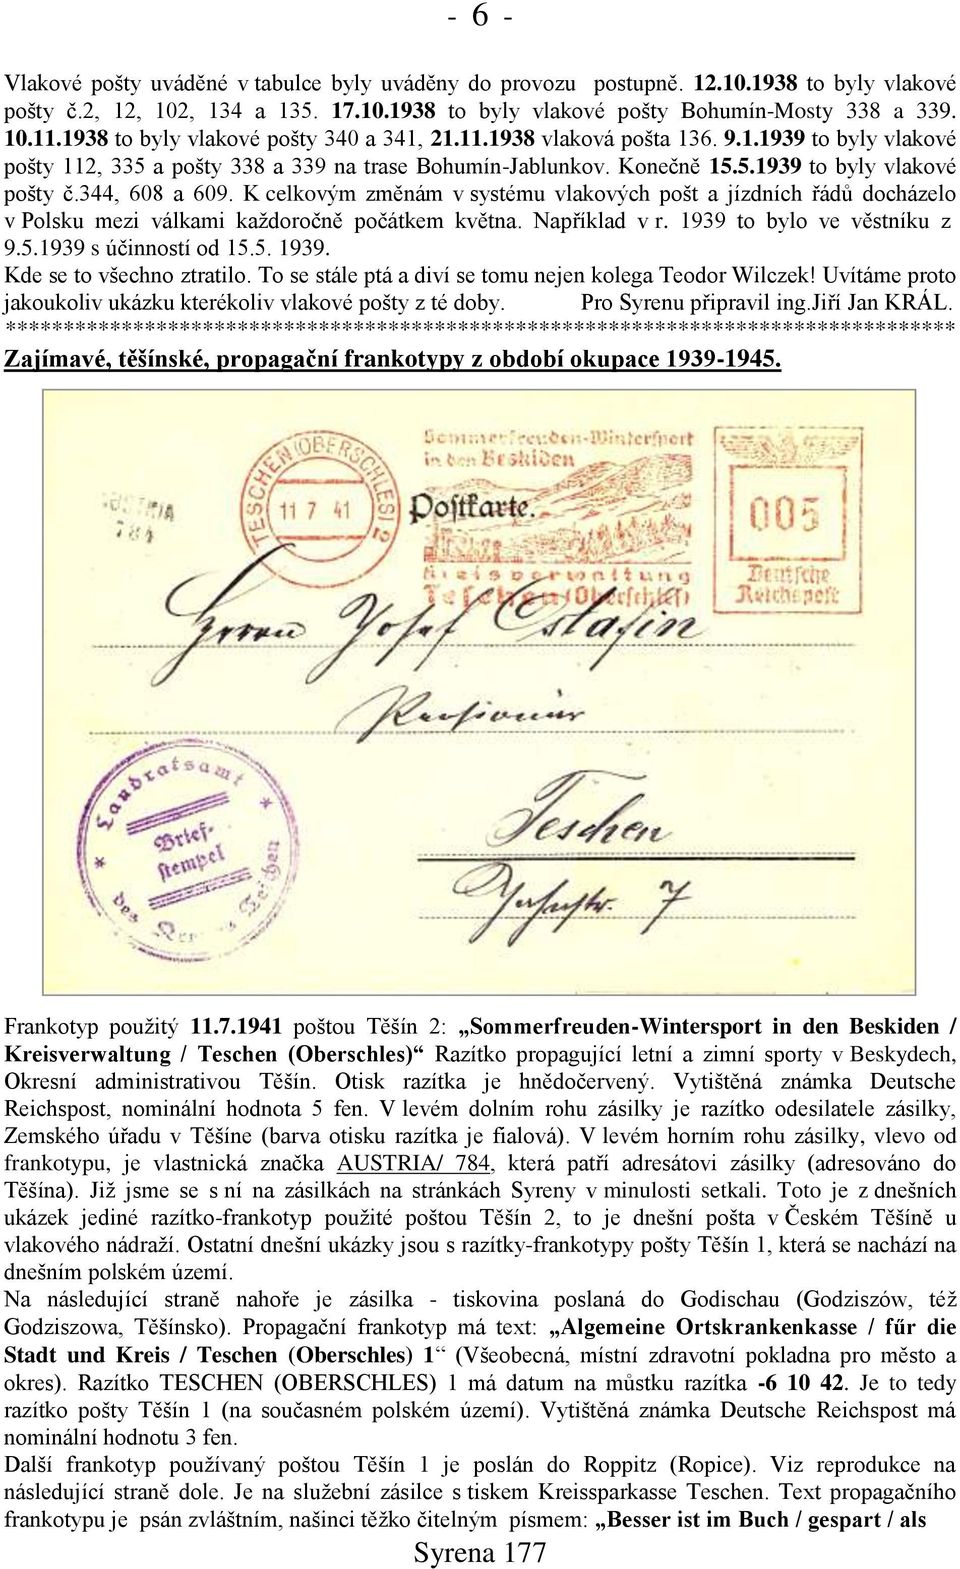 344, 608 a 609. K celkovým změnám v systému vlakových pońt a jízdních řádů docházelo v Polsku mezi válkami kaņdoročně počátkem května. Například v r. 1939 to bylo ve věstníku z 9.5.